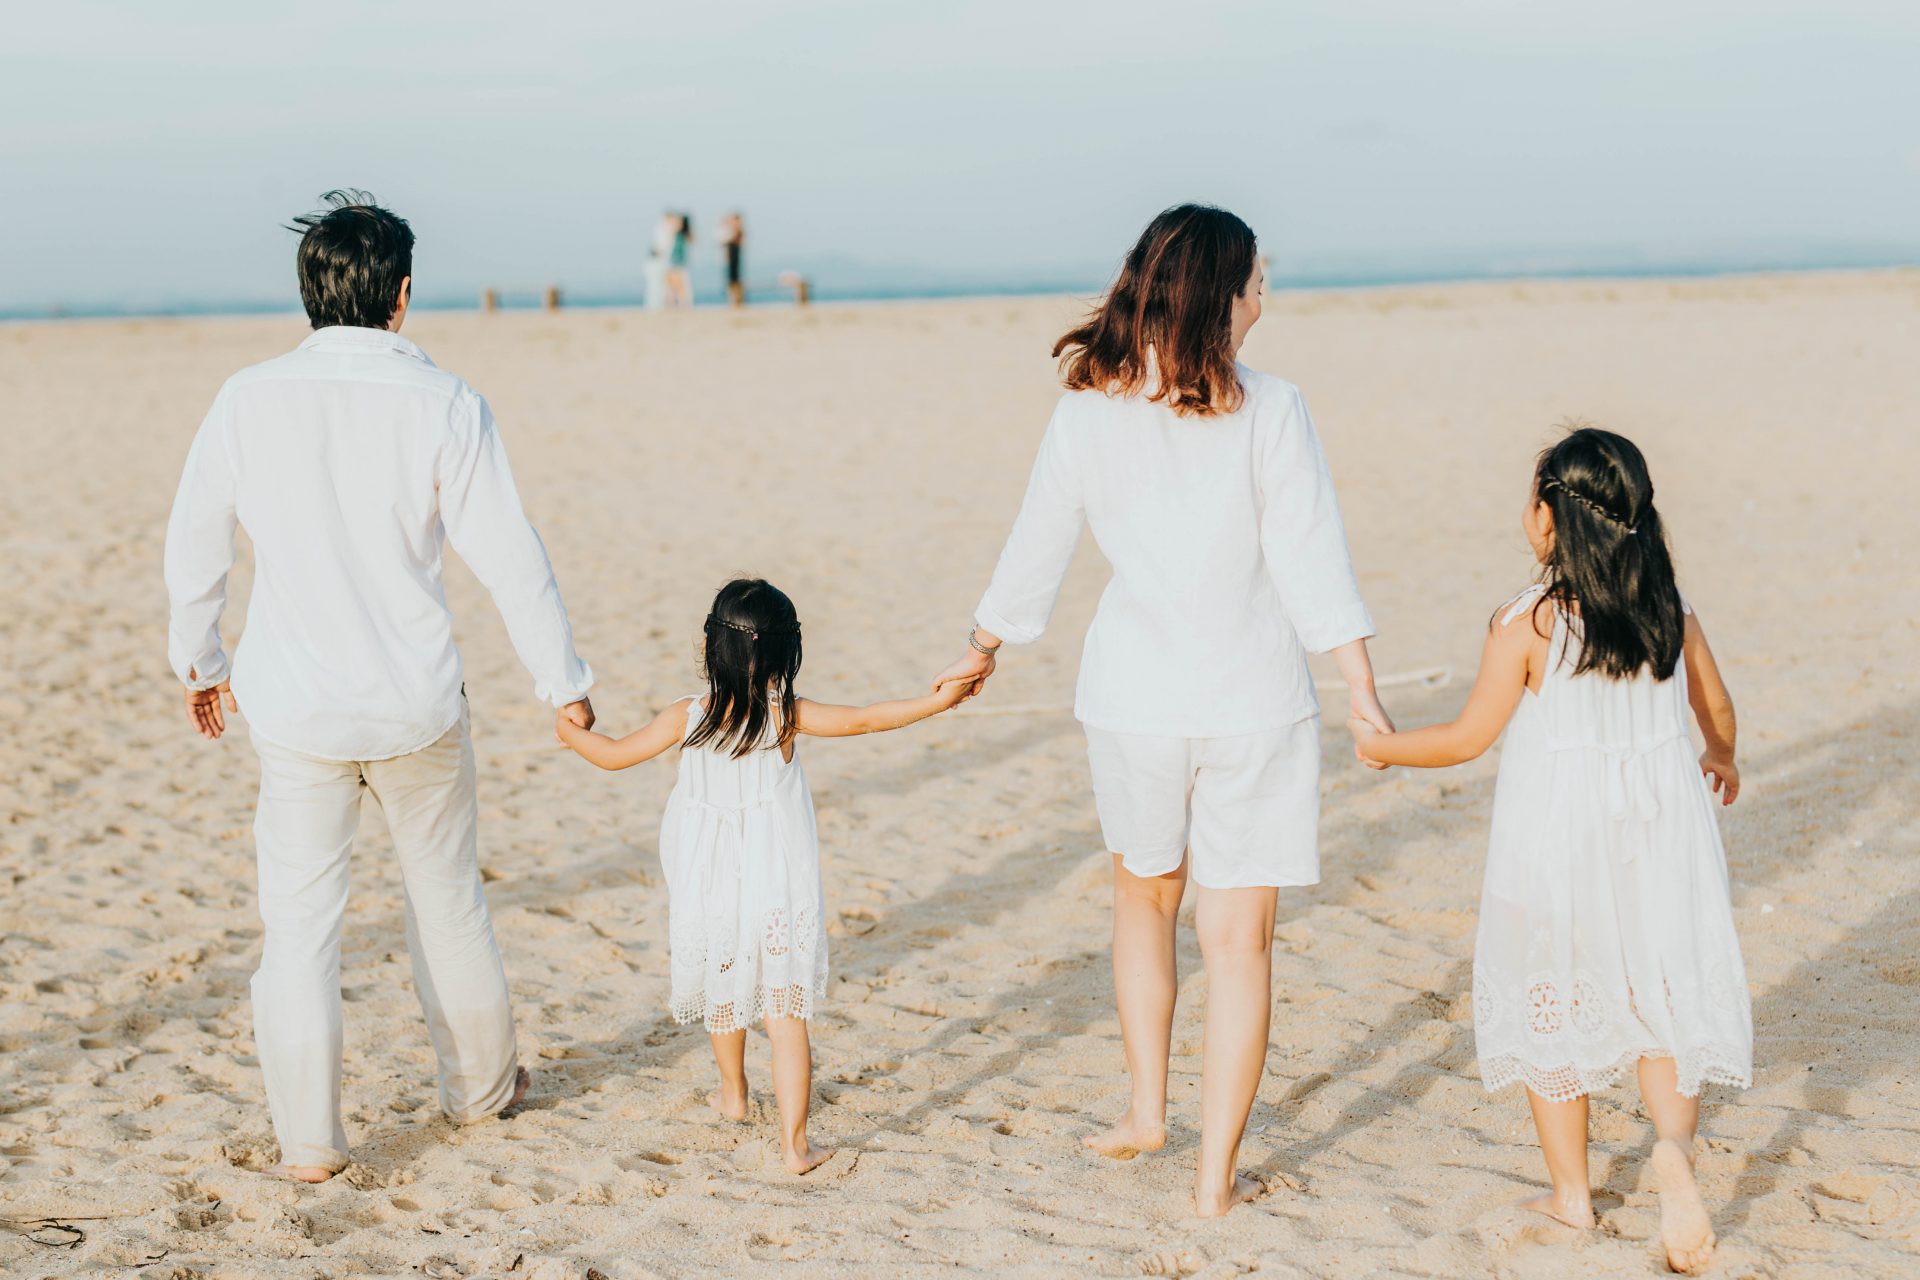 Không gian xanh mát cùng biển uốn lượn tạo nên bộ hình chụp ảnh gia đình đẹp nhất. Hãy để bức ảnh diễn tả tình cảm ấm áp, niềm vui của gia đình Việt Nam và sự phấn khởi khi chụp hình trên bãi biển.